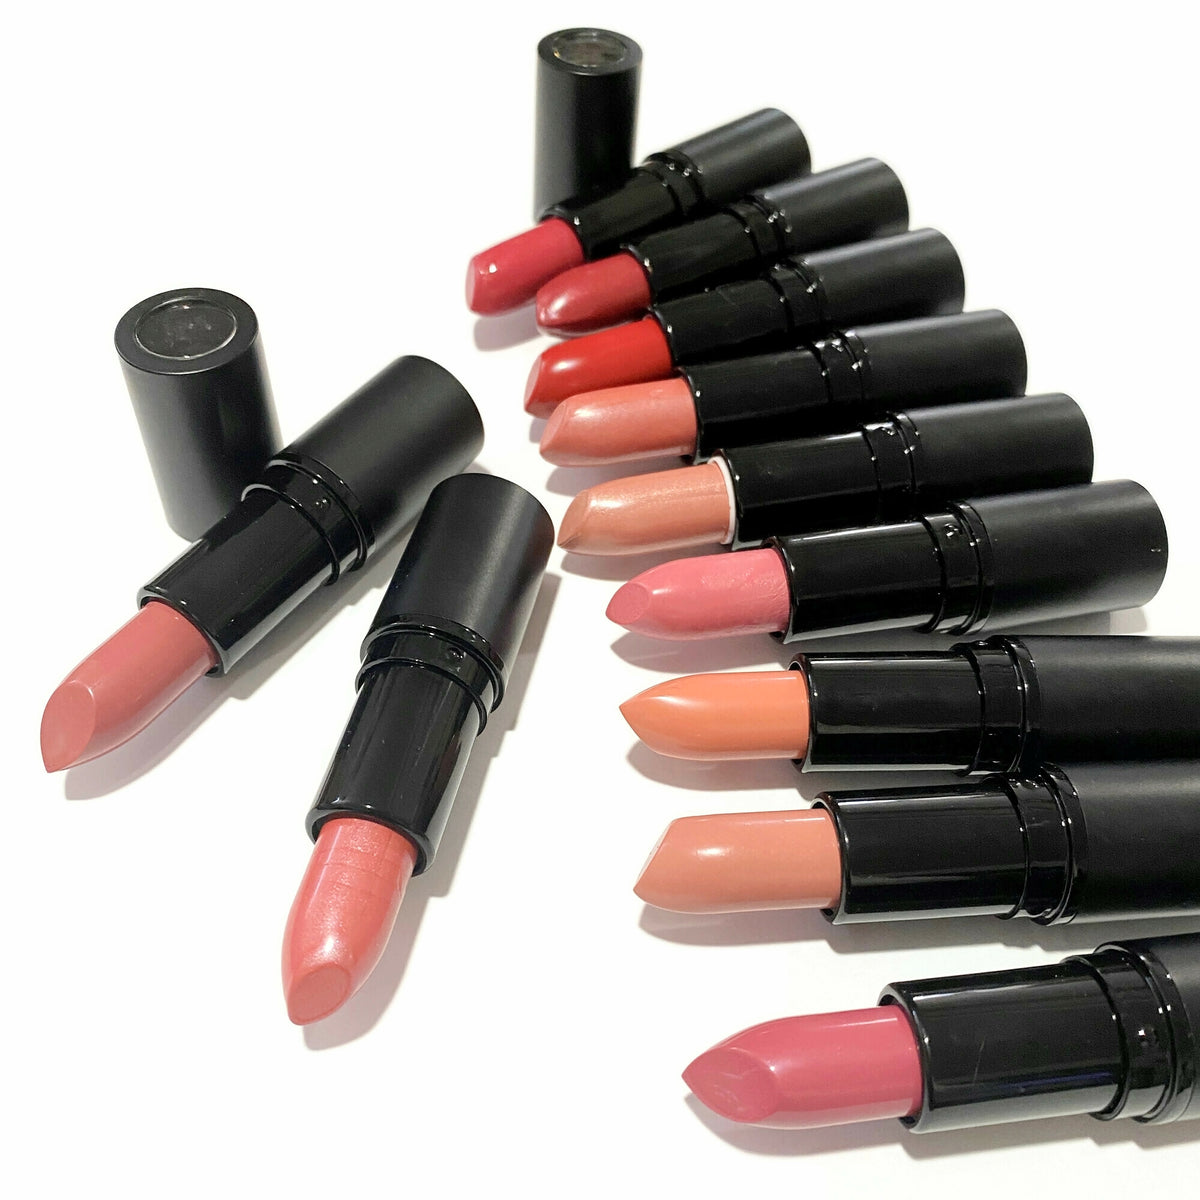 Shea Butter Lipstick Samples